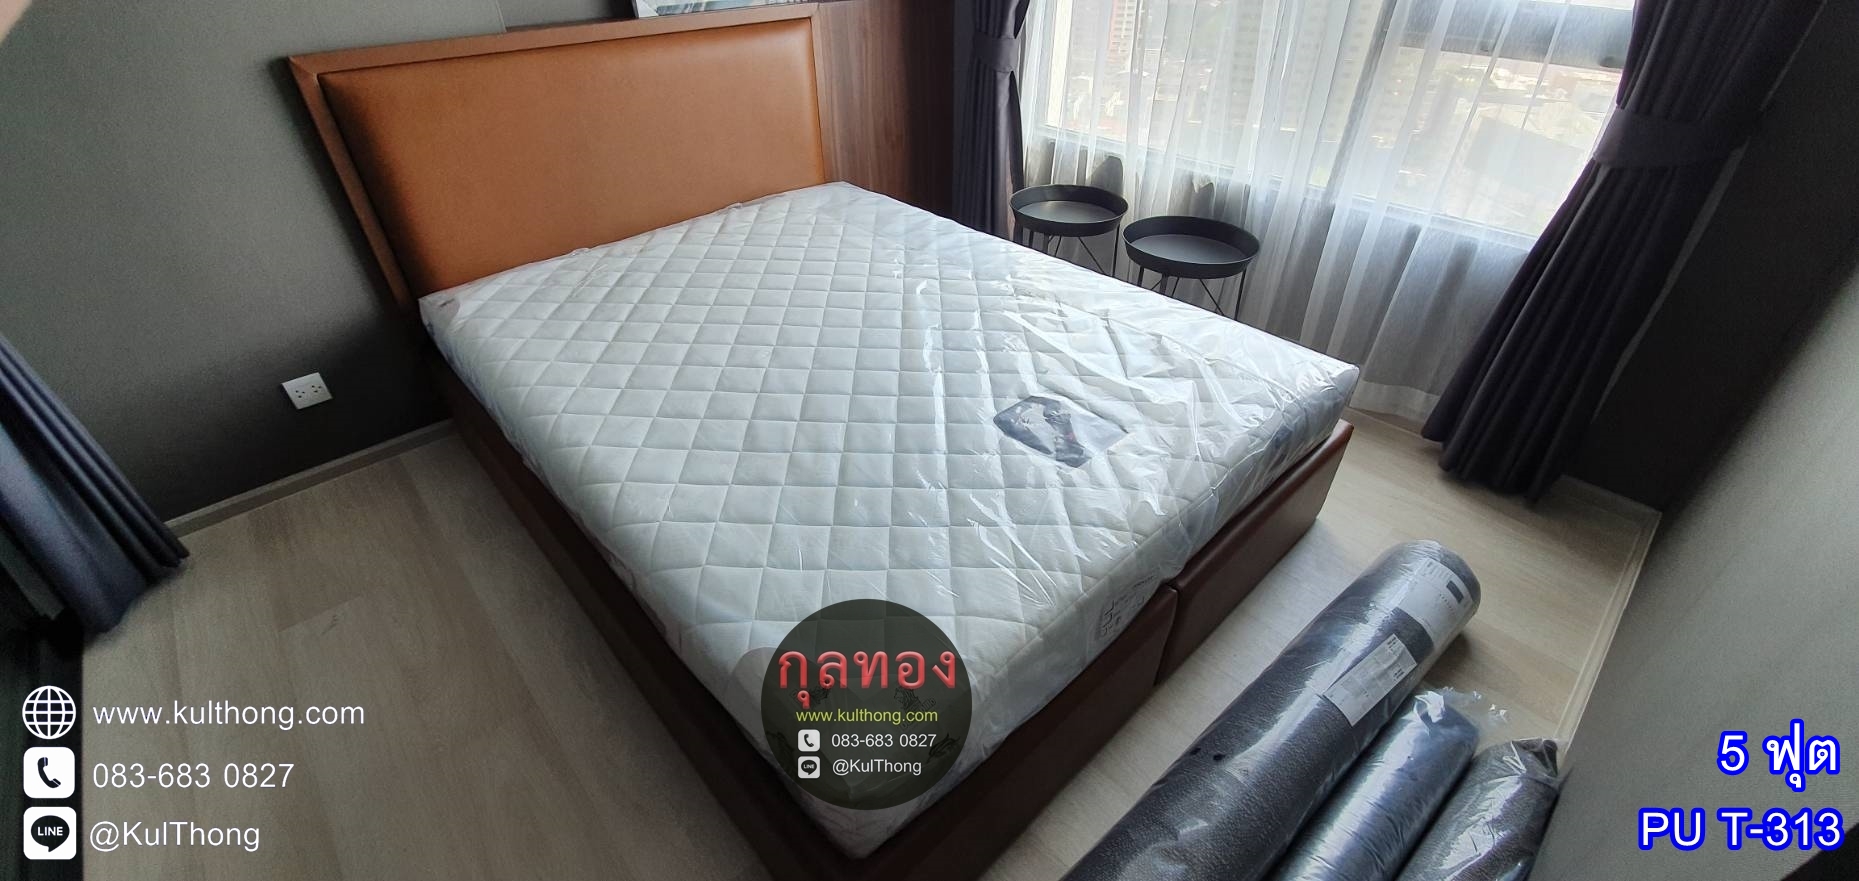 ฐานเตียงดีไซน์ ฐานเตียงแบบมีหัวเตียง เตียงสั่งทำ เตียงราคาโรงงาน